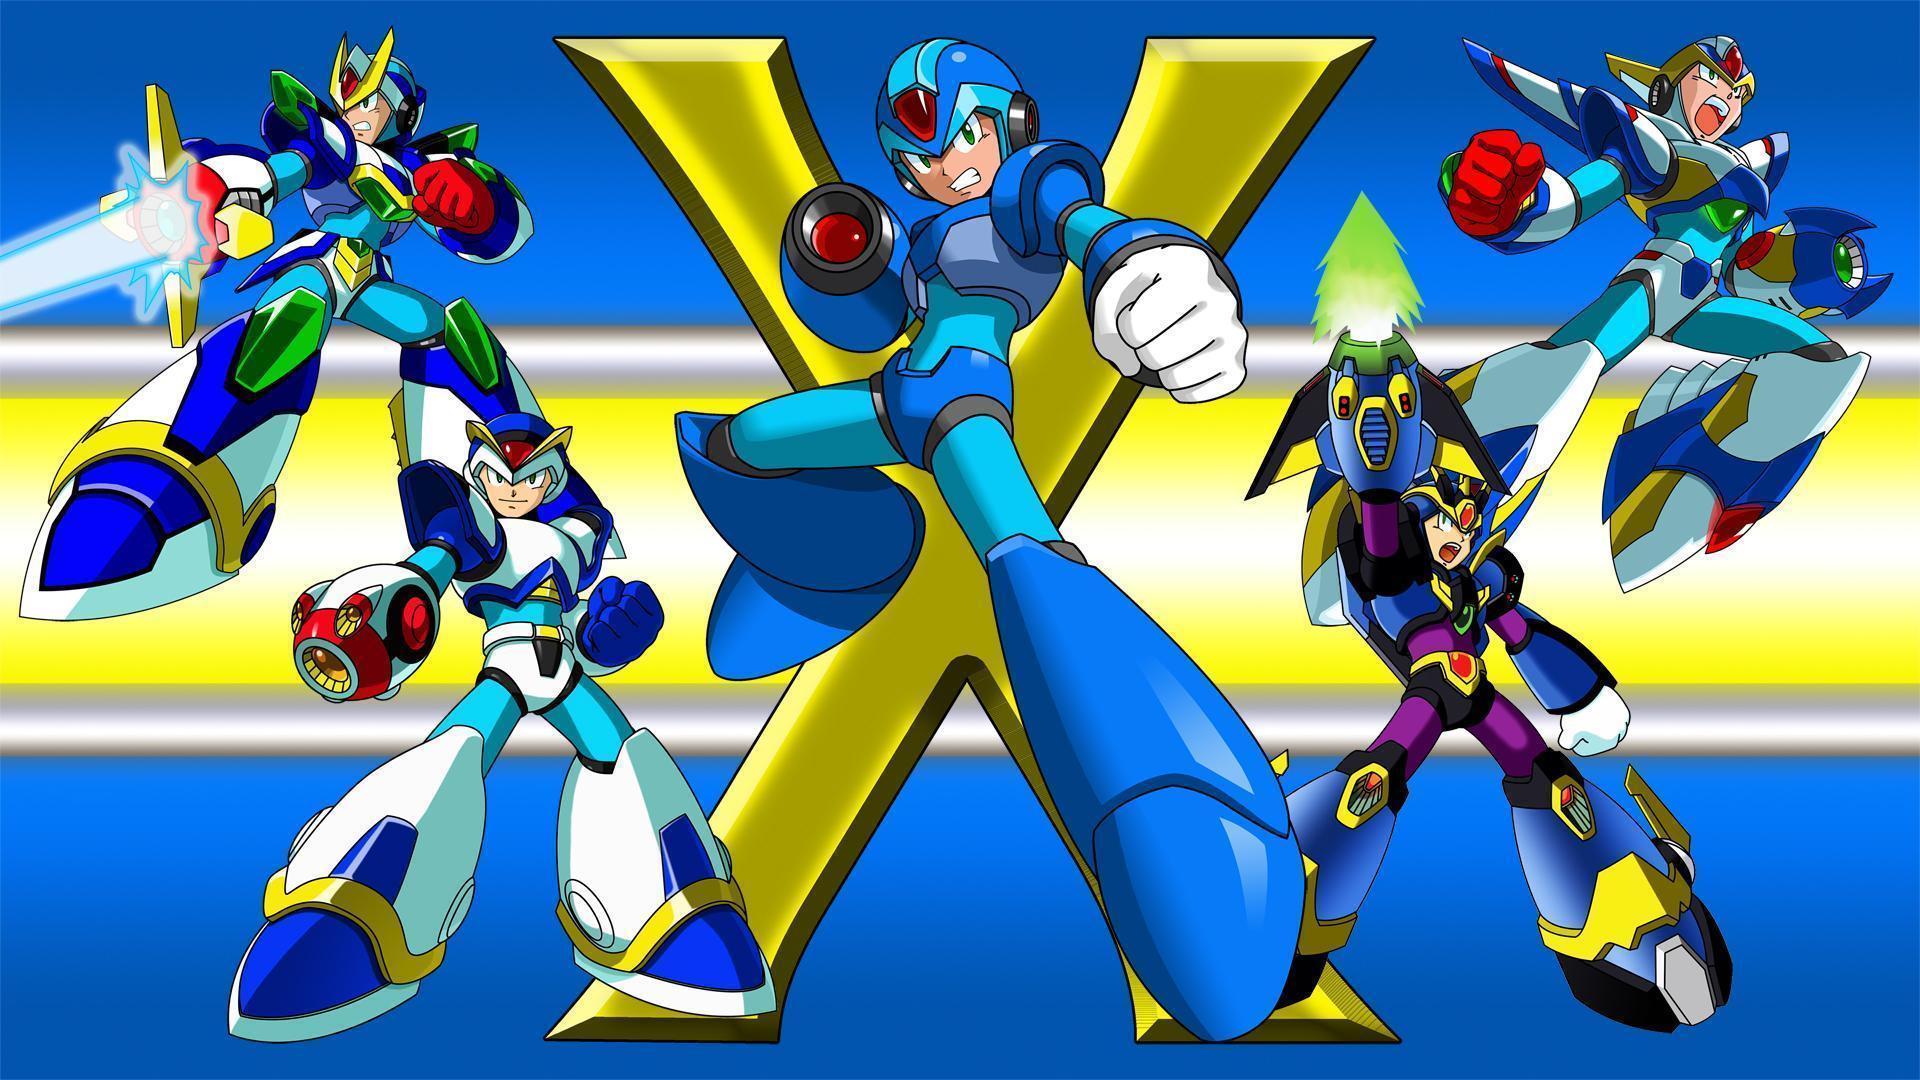 HD Mega Man X Wallpaper